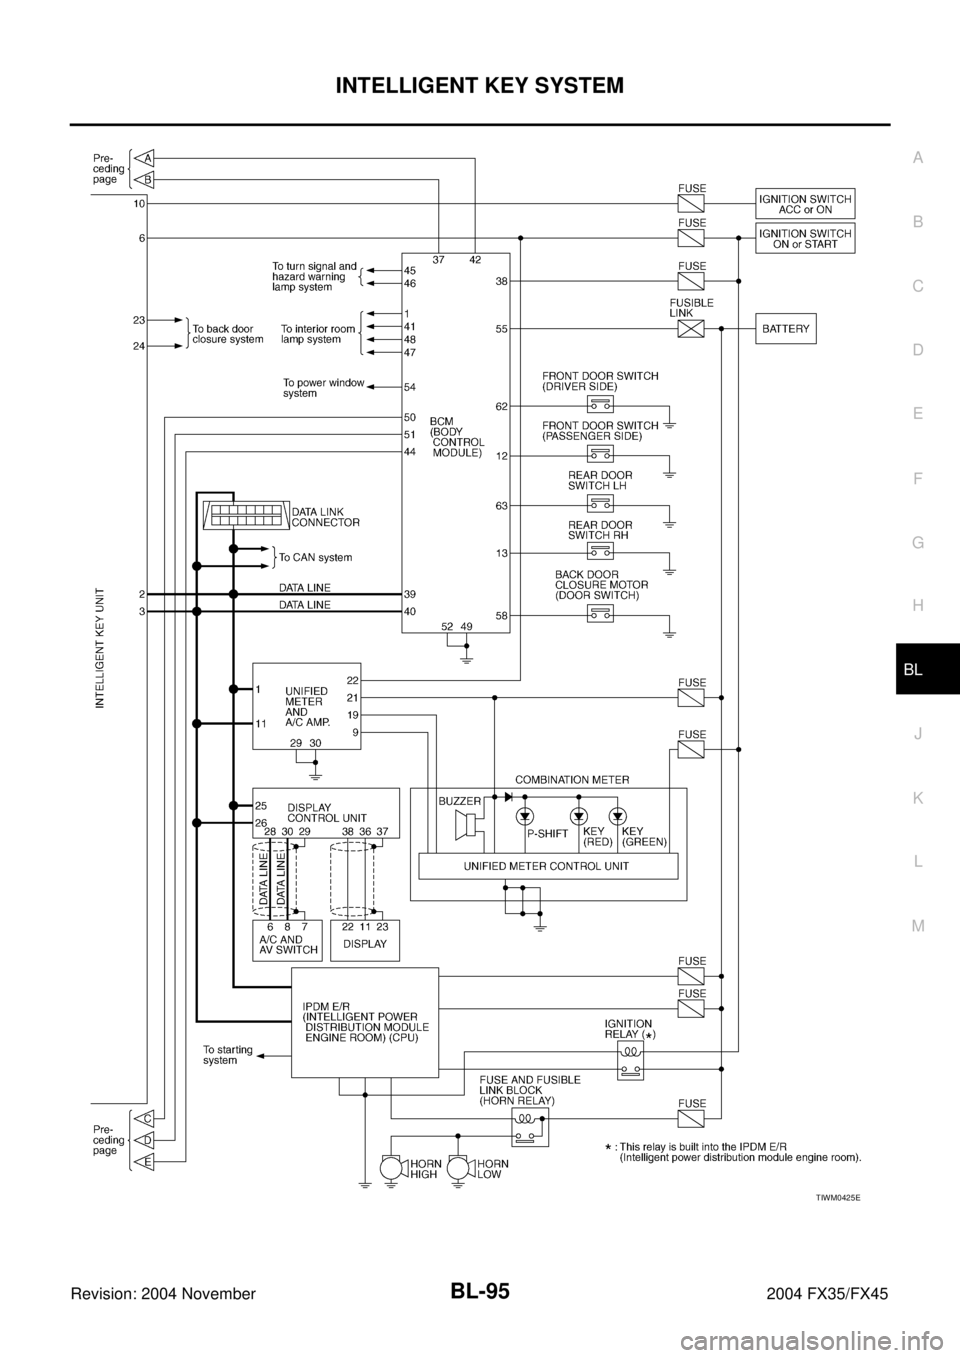 INFINITI FX35 2004  Service Manual INTELLIGENT KEY SYSTEM
BL-95
C
D
E
F
G
H
J
K
L
MA
B
BL
Revision: 2004 November 2004 FX35/FX45
TIWM0425E 